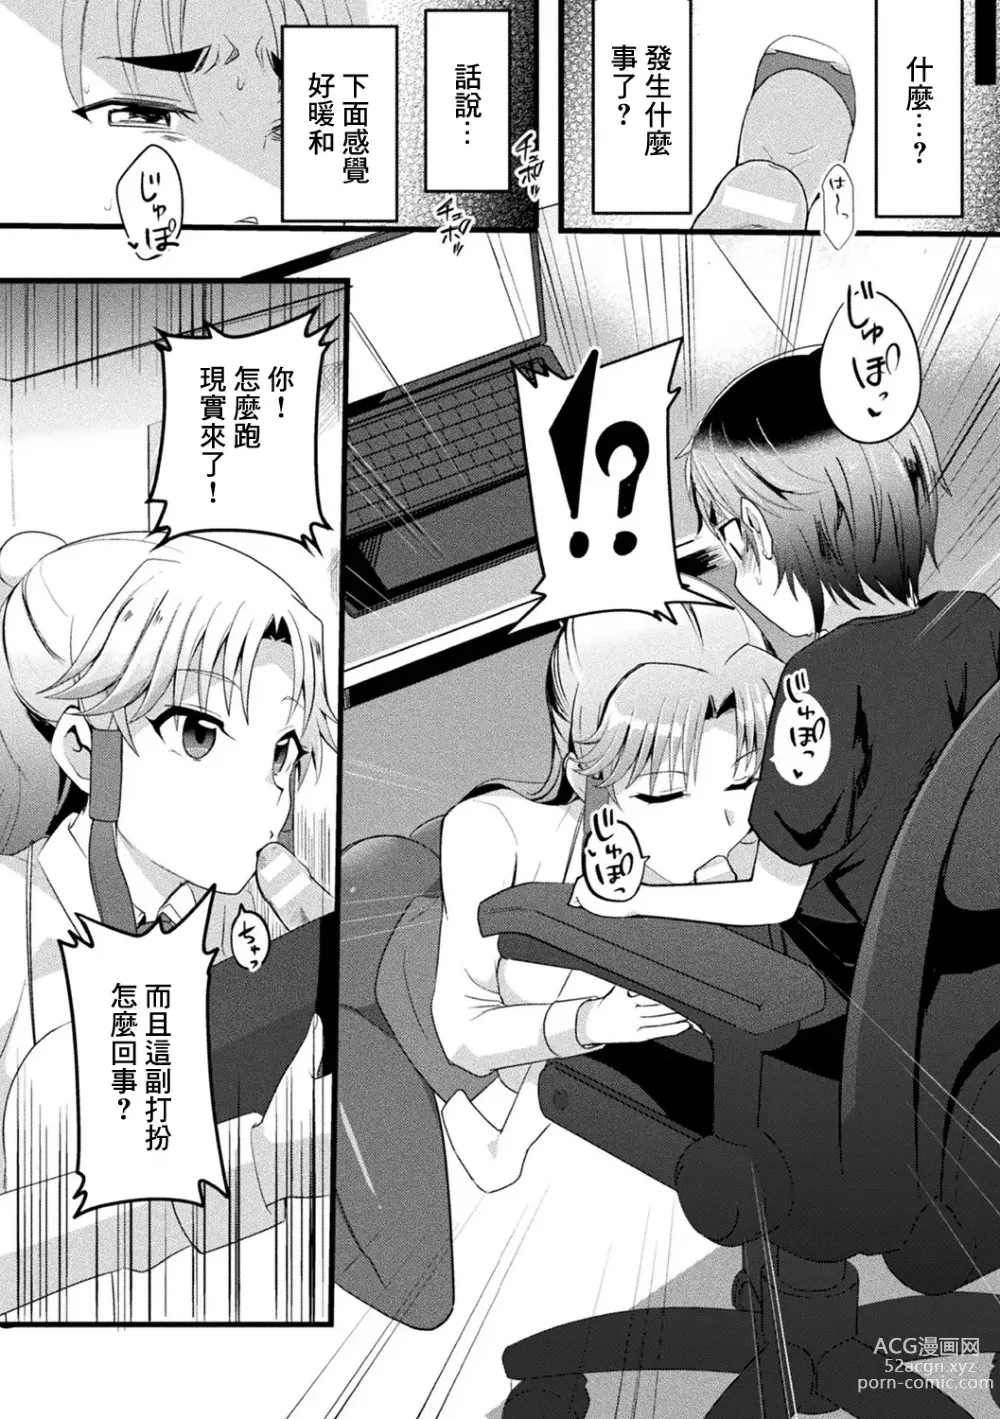 Page 4 of manga Mama Doko Doko - Mom! Where are you?